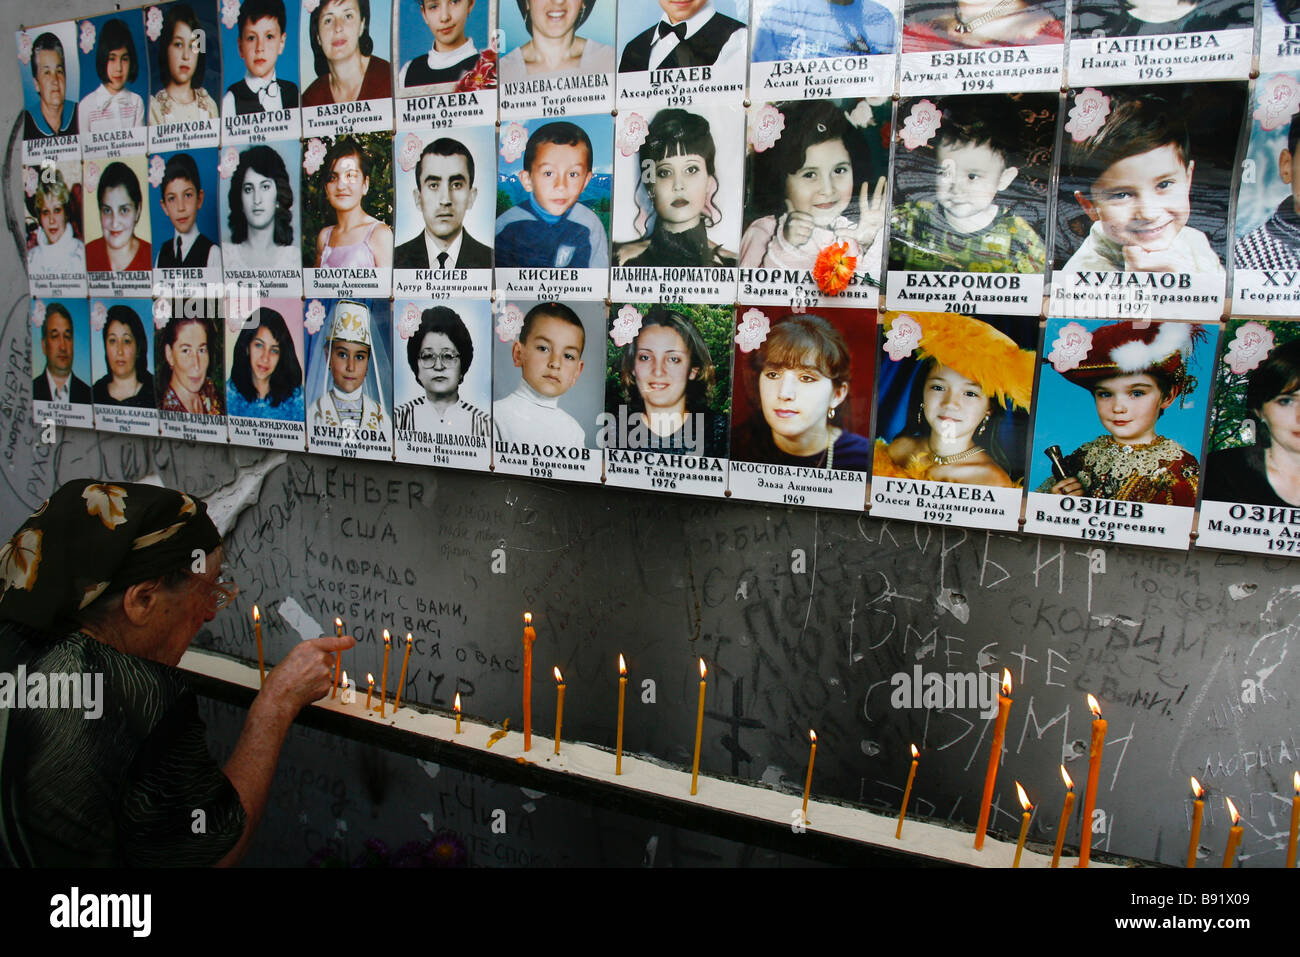 Сколько погибших в беслане 3 сентября. Дети Беслана 1 сентября 2004. Беслан 2004 год школа теракт.